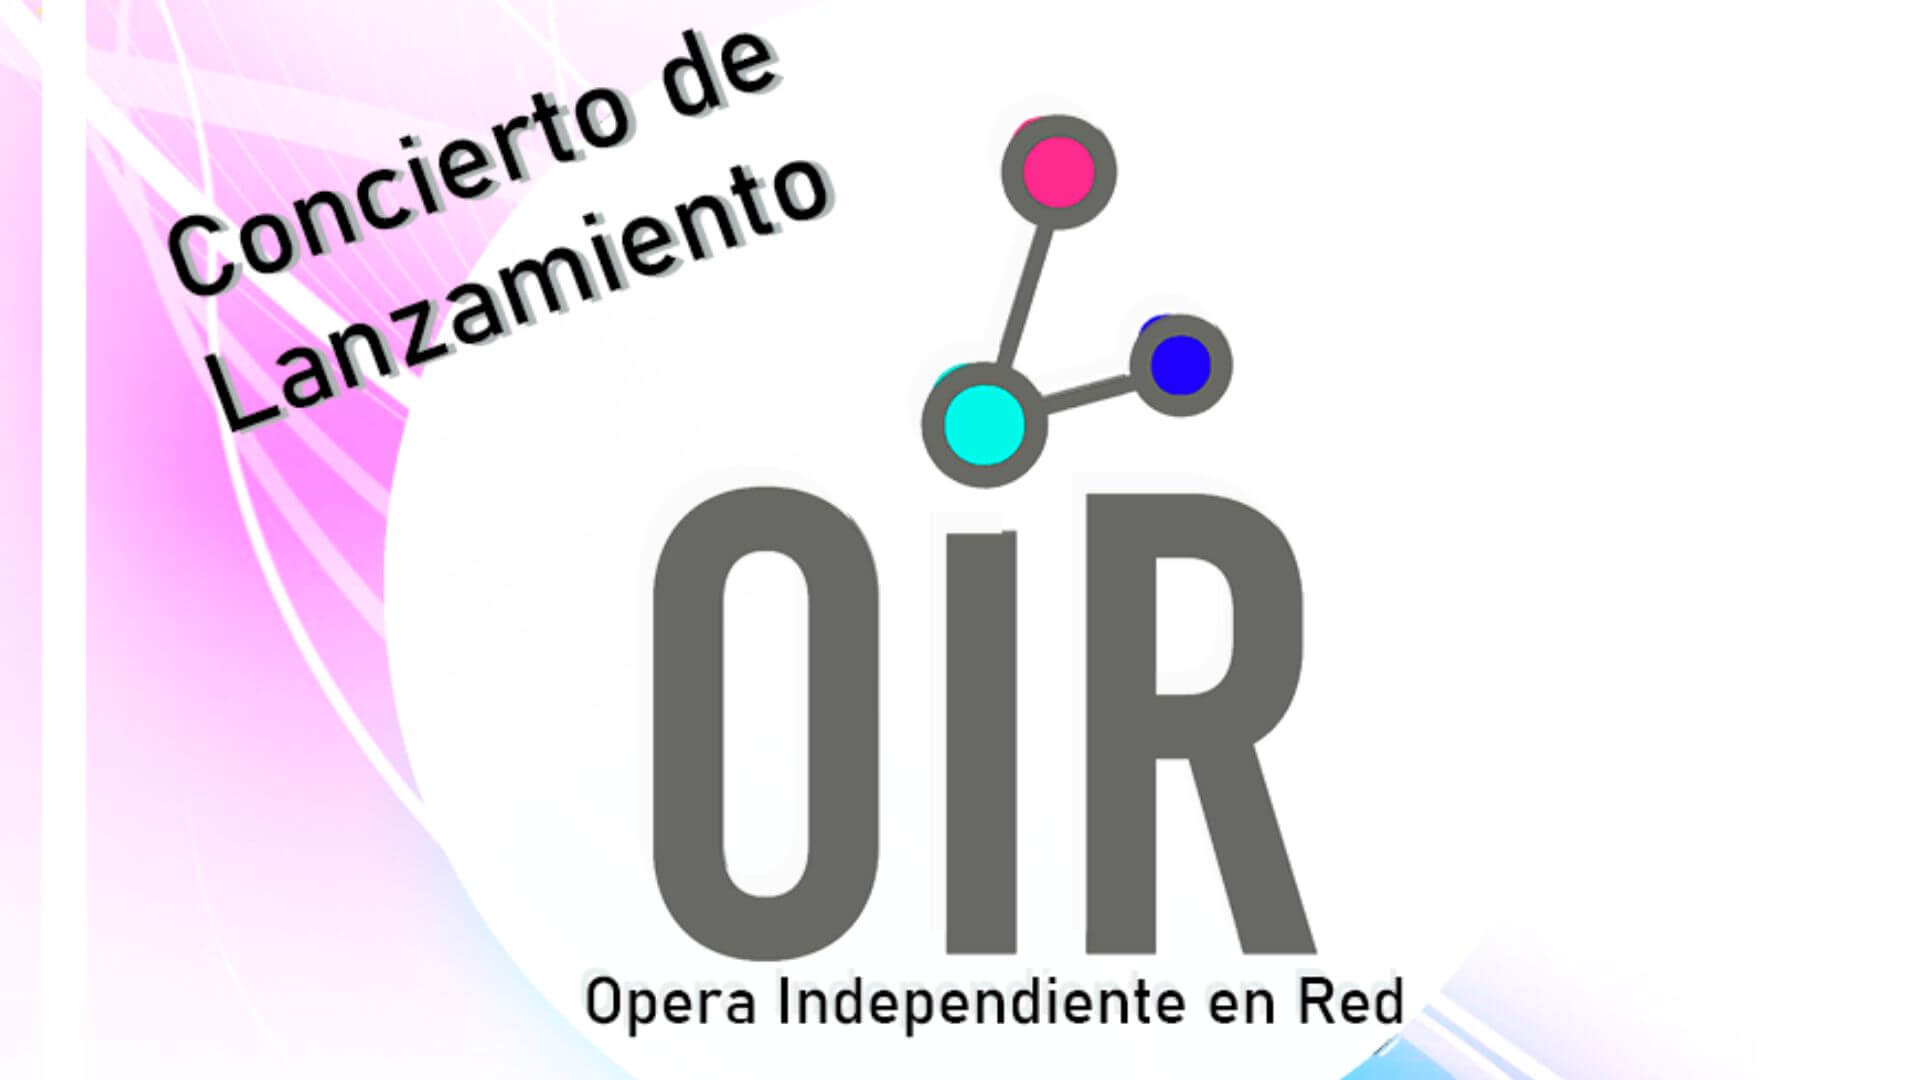 Flyer del concierto de lanzamiento de la red de opera independiente